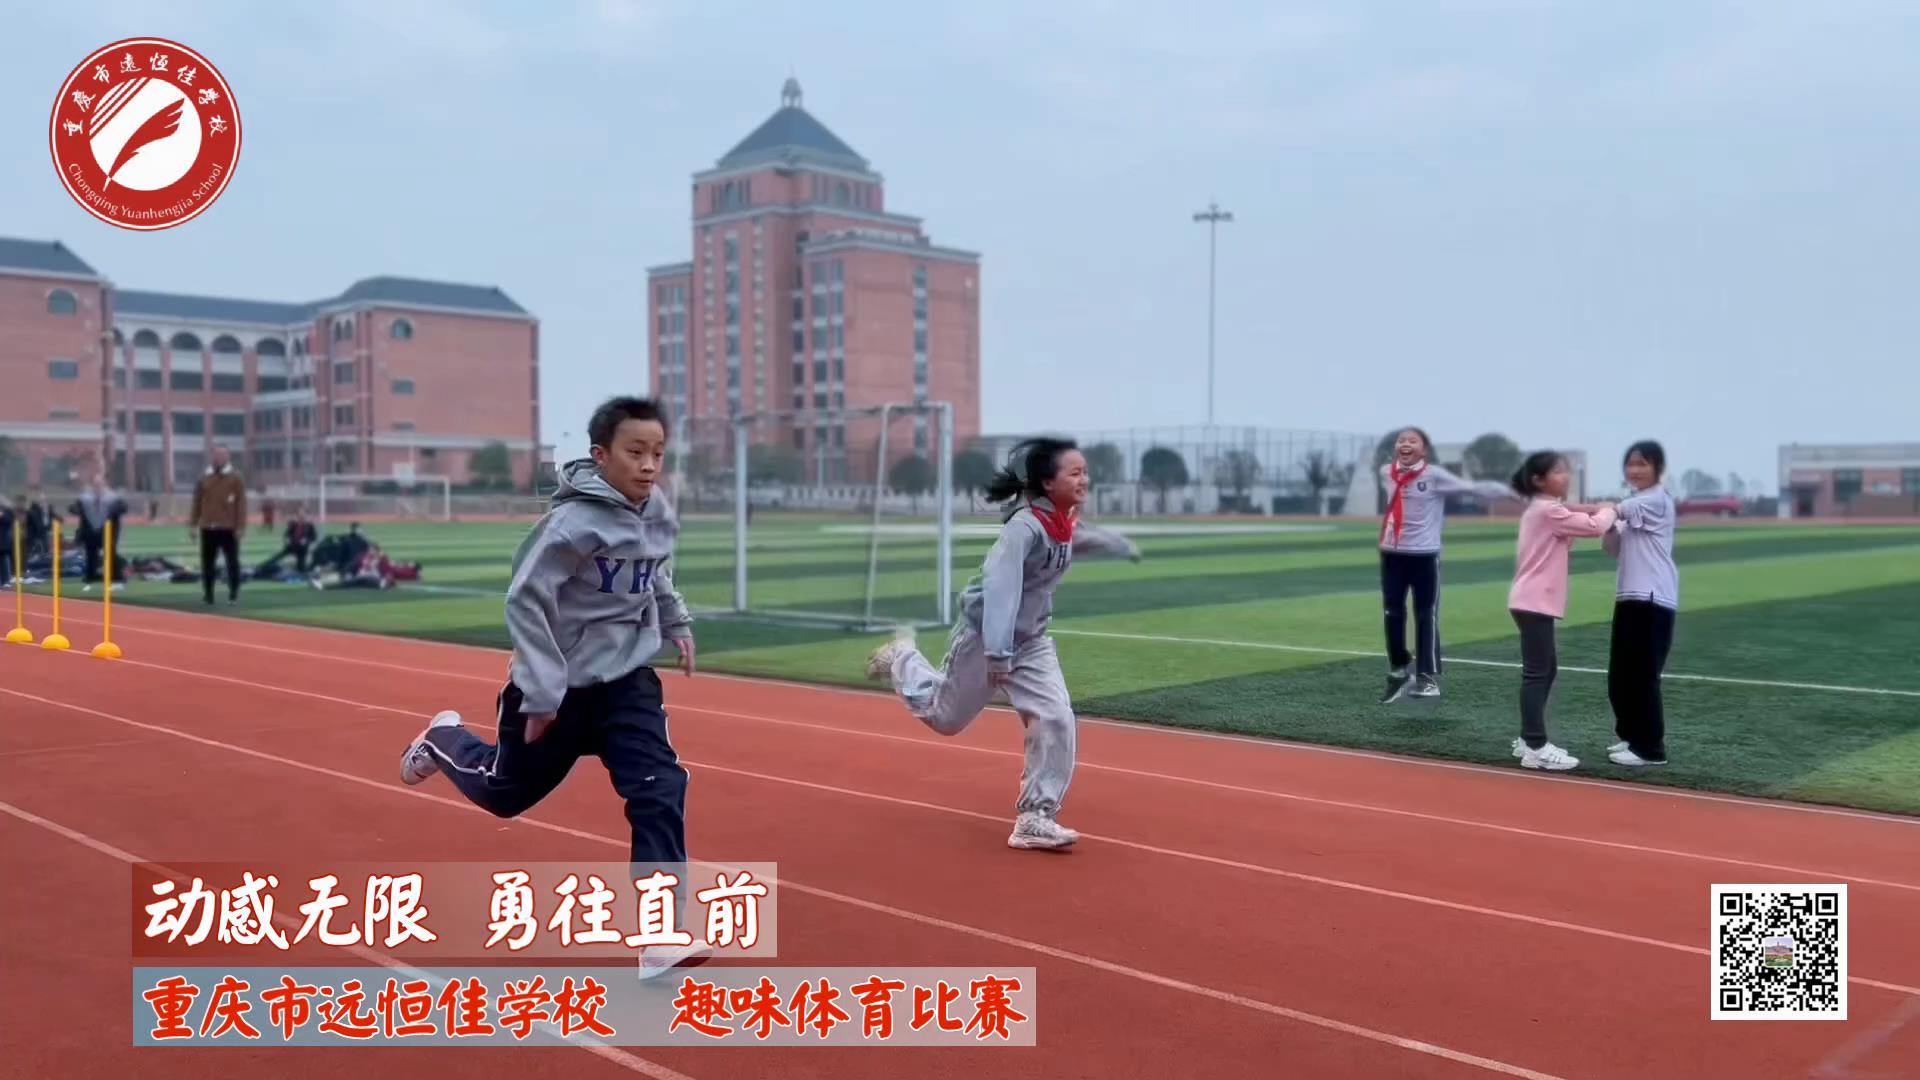 动感无限 勇往直前——重庆市远恒佳学校小学部趣味运动会